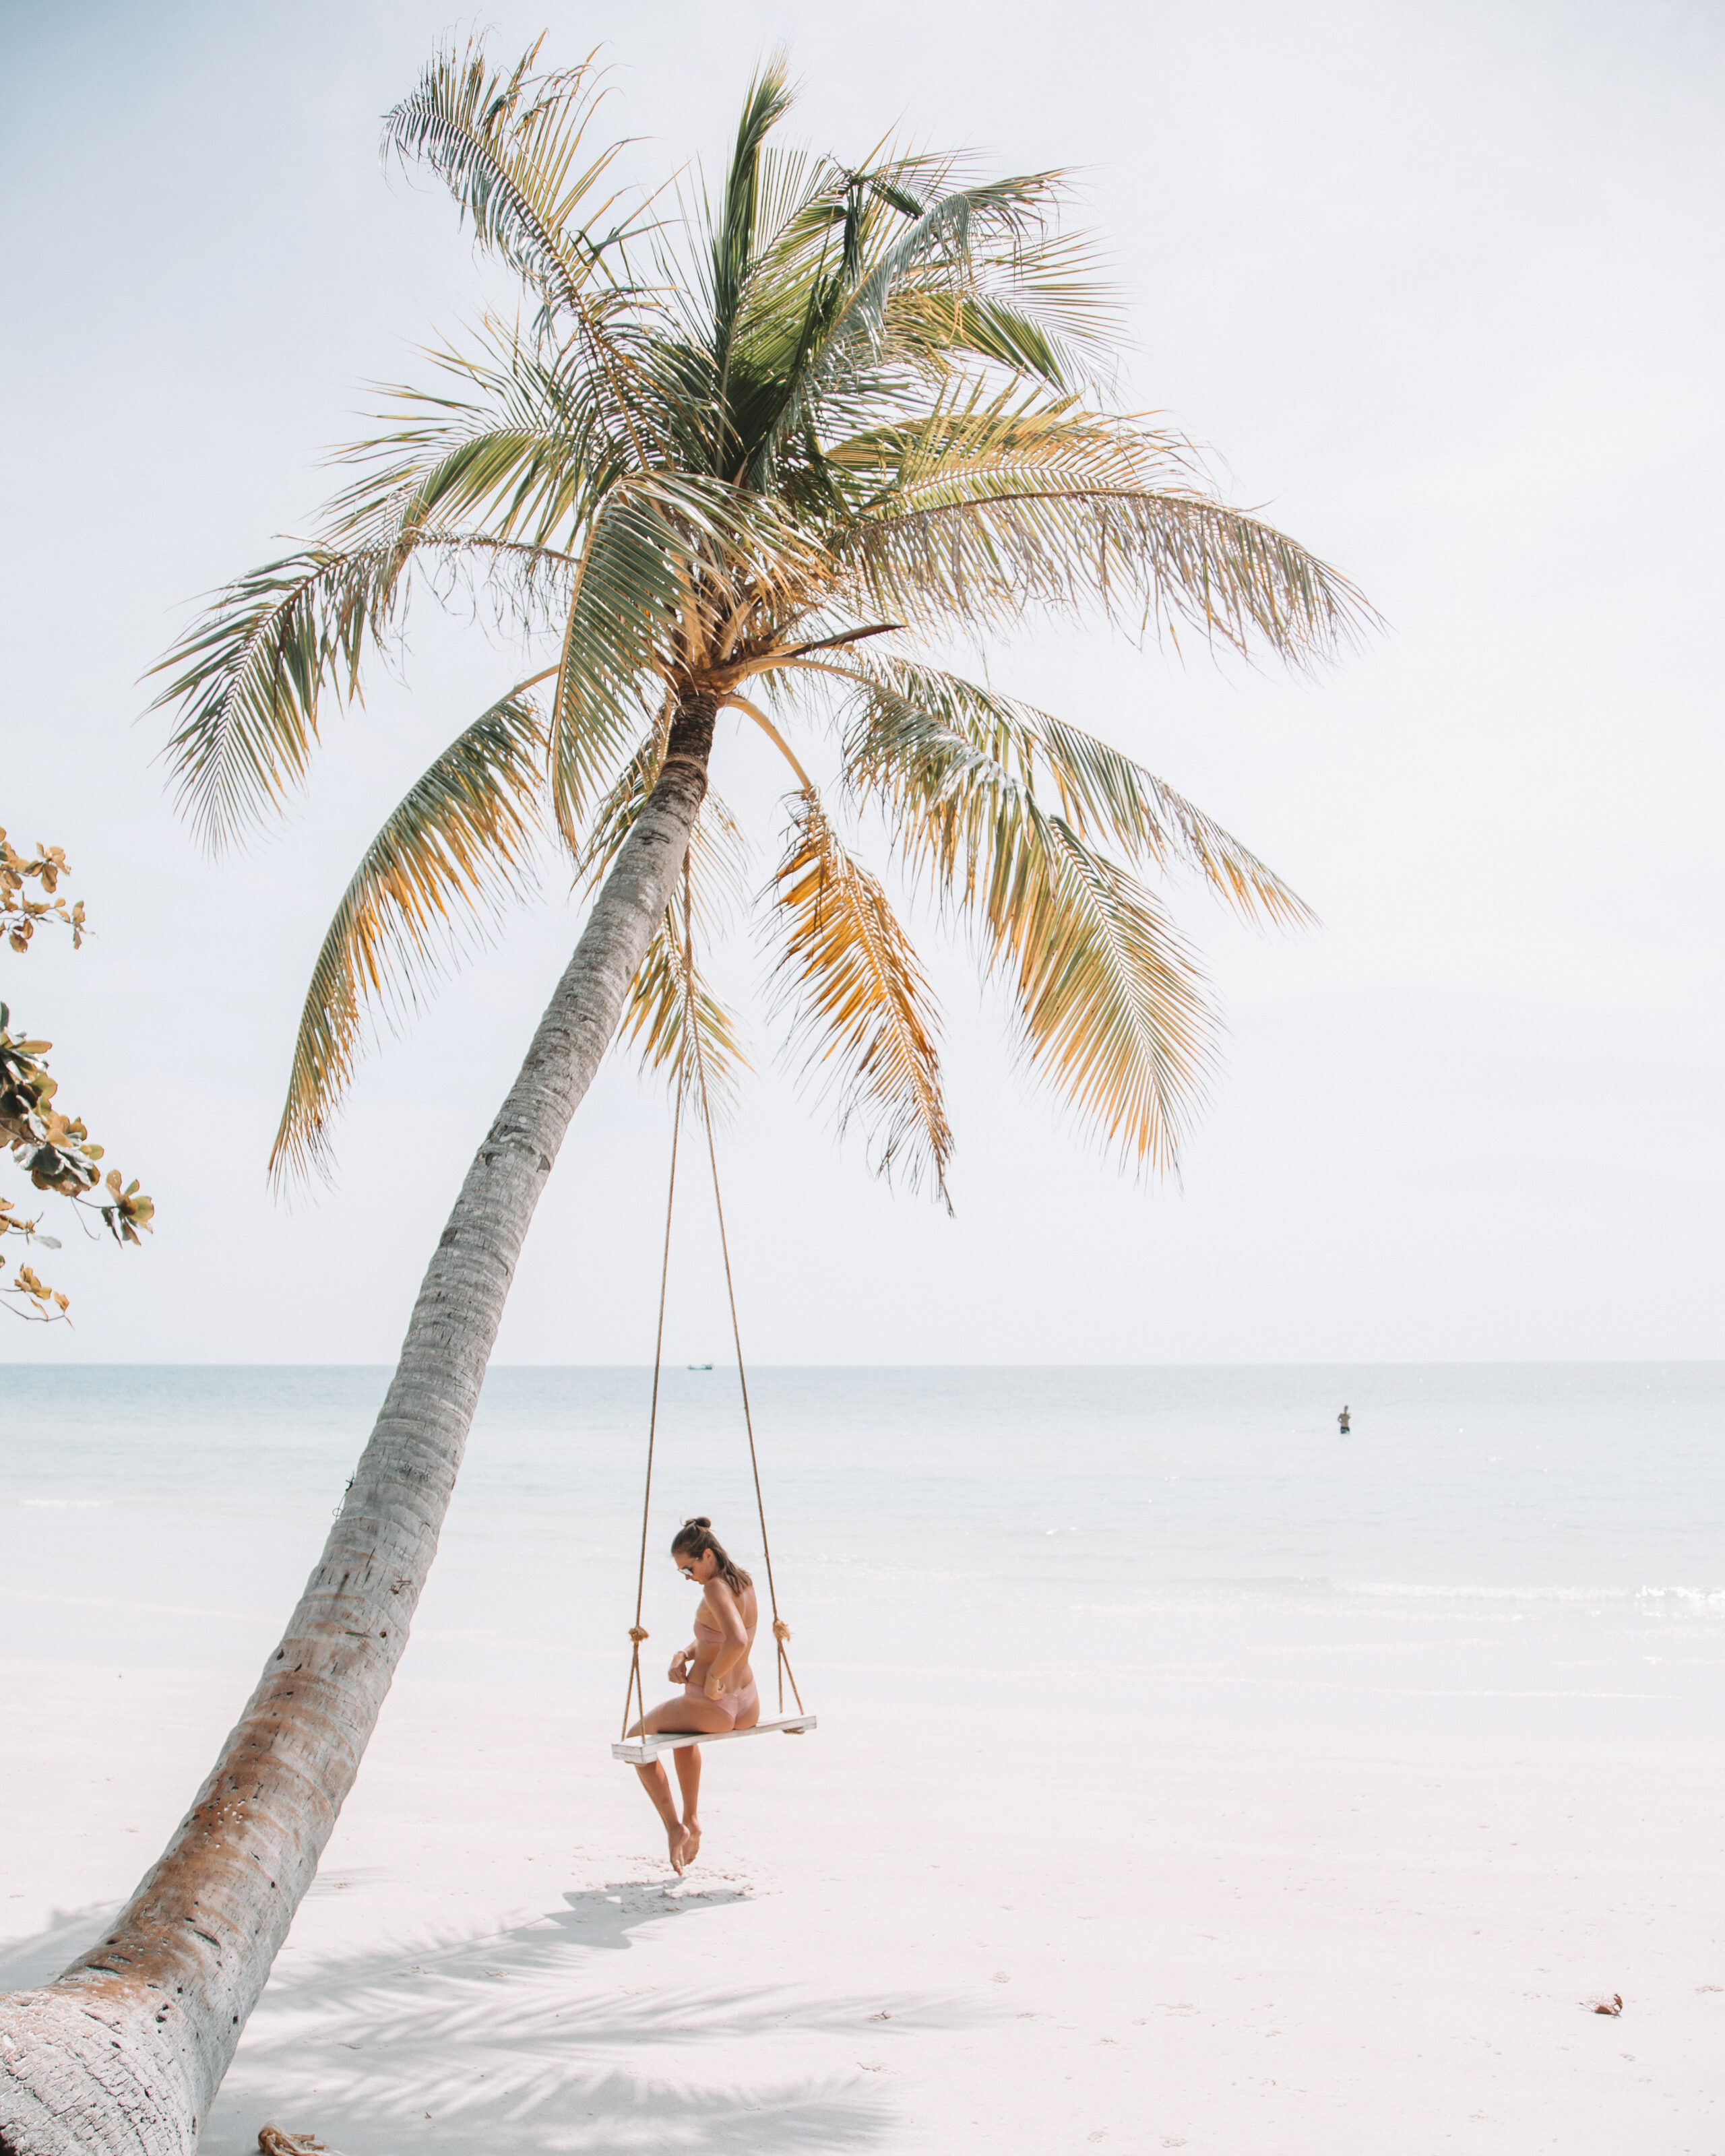 Sonnenschutz Tipps: Frau sitzt auf einer Schaukel unter Palme am Strand